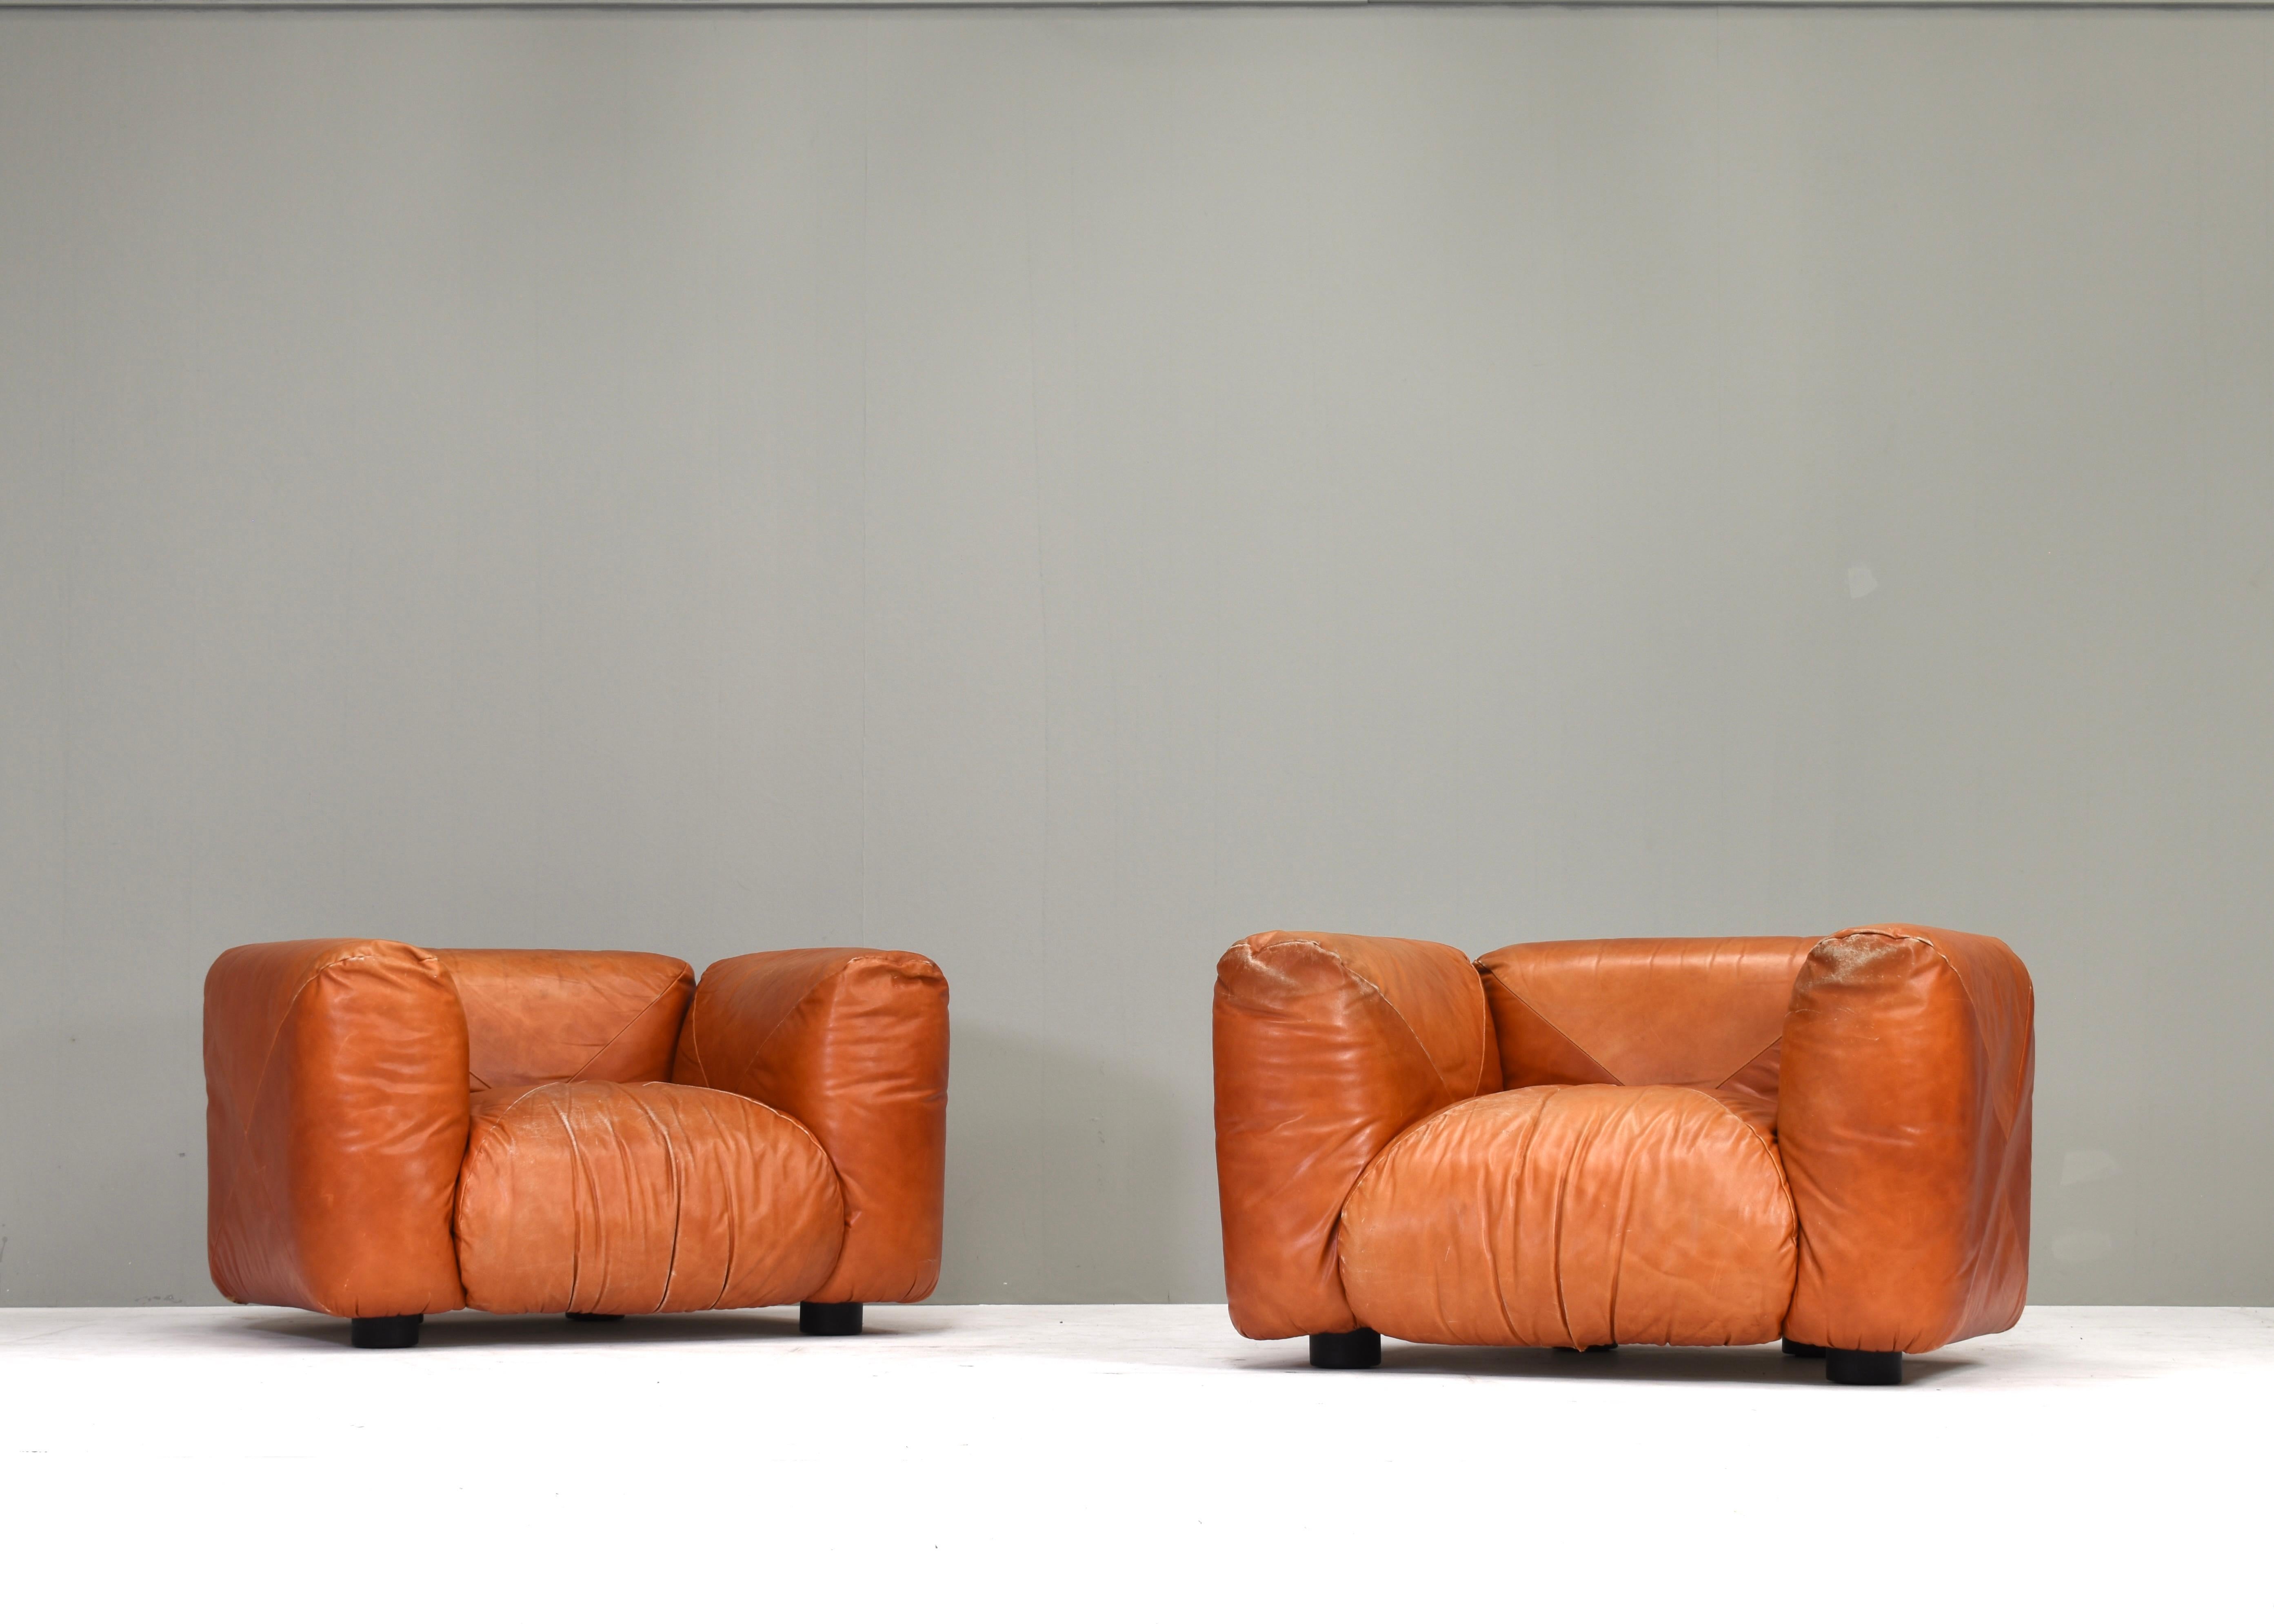 Die Sessel und das Sofa Marius&Marius wurden 1970 von dem italienischen Architekten und Designer Mario Marenco entworfen. Er ist bekannt für unverwechselbare und innovative Entwürfe mit großen, plüschigen Kissen, die auf einer leichten, flexiblen